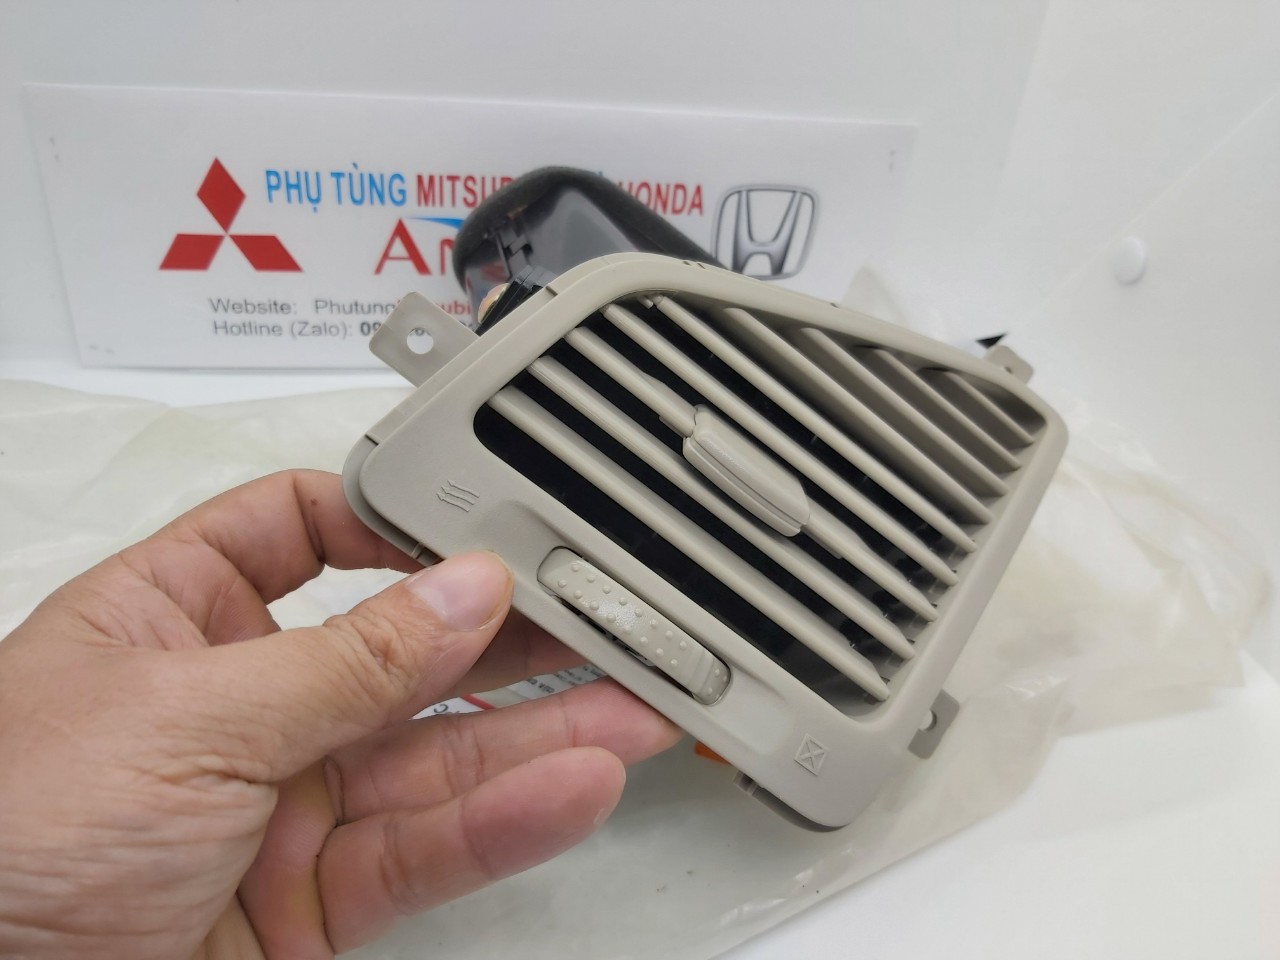 Cửa gió điều hòa xe Zinger được sử dụng cho xe Mitsubishi Zinger✅Nhập khẩu chính hãng✅Giá tốt nhất✅Cung cấp bởi Phụ tùng Mitsubishi An Việt – PhutungMitsubishi.vn